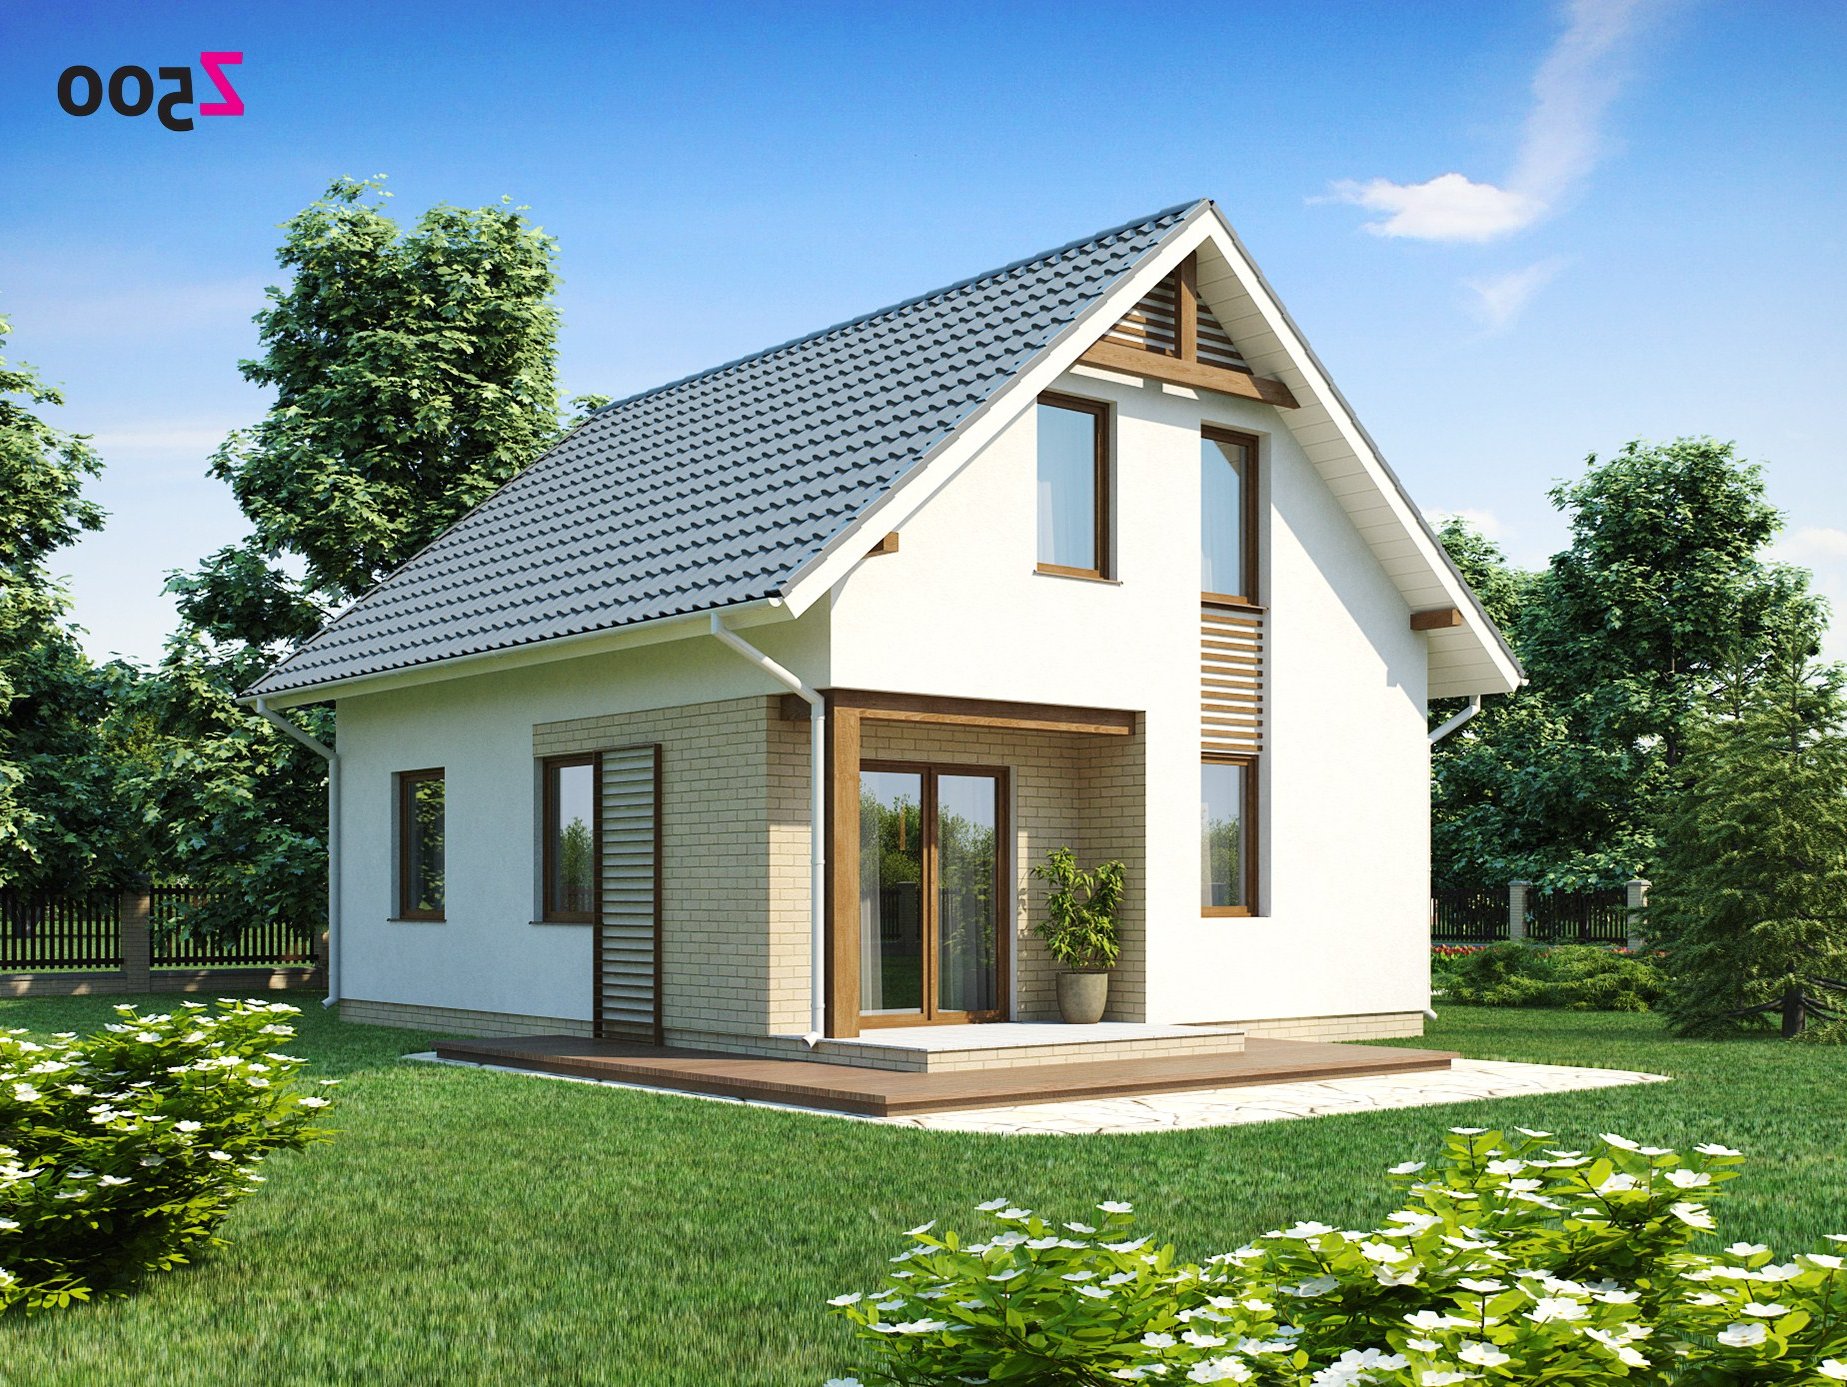  маленького дома бесплатно » Современный дизайн на Vip-1gl